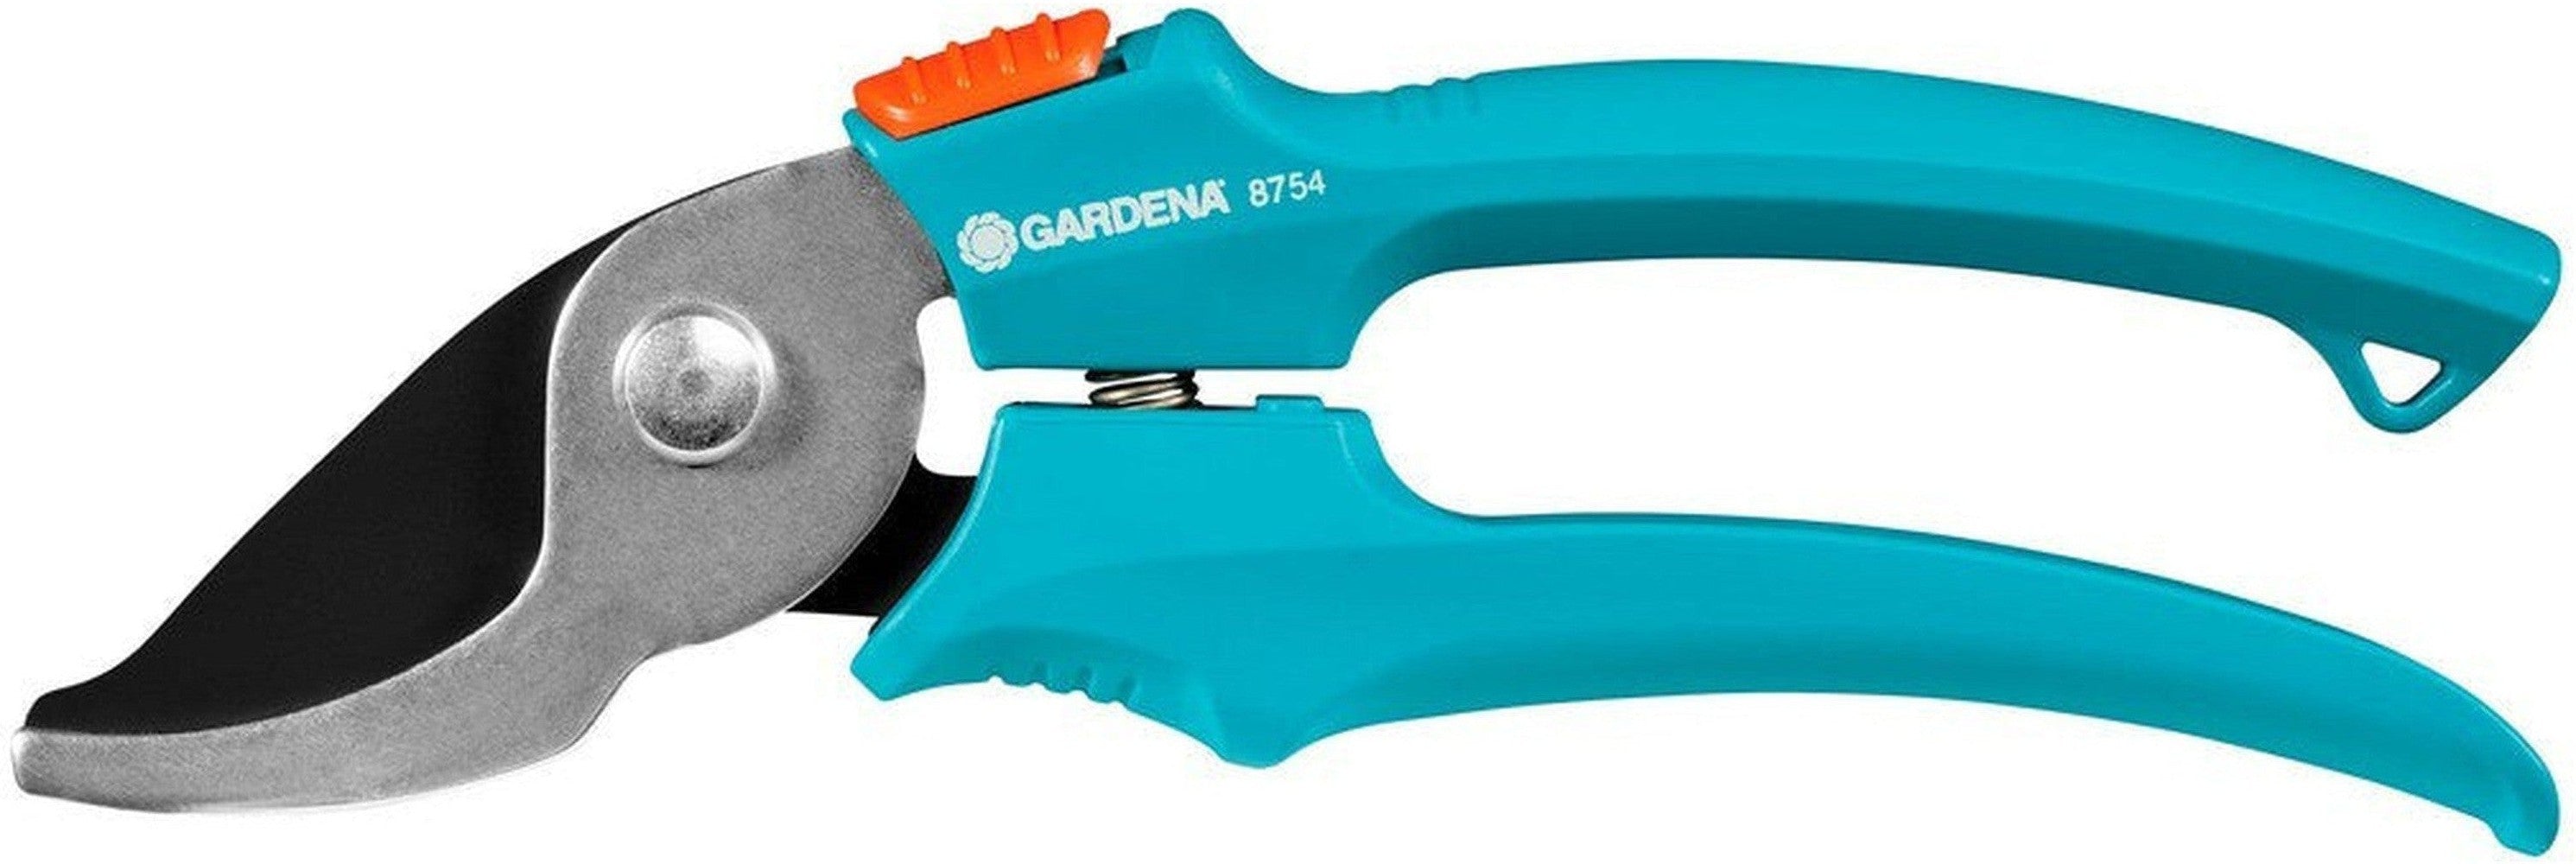 Beskjæringssak Gardena 8754-30 18 mm